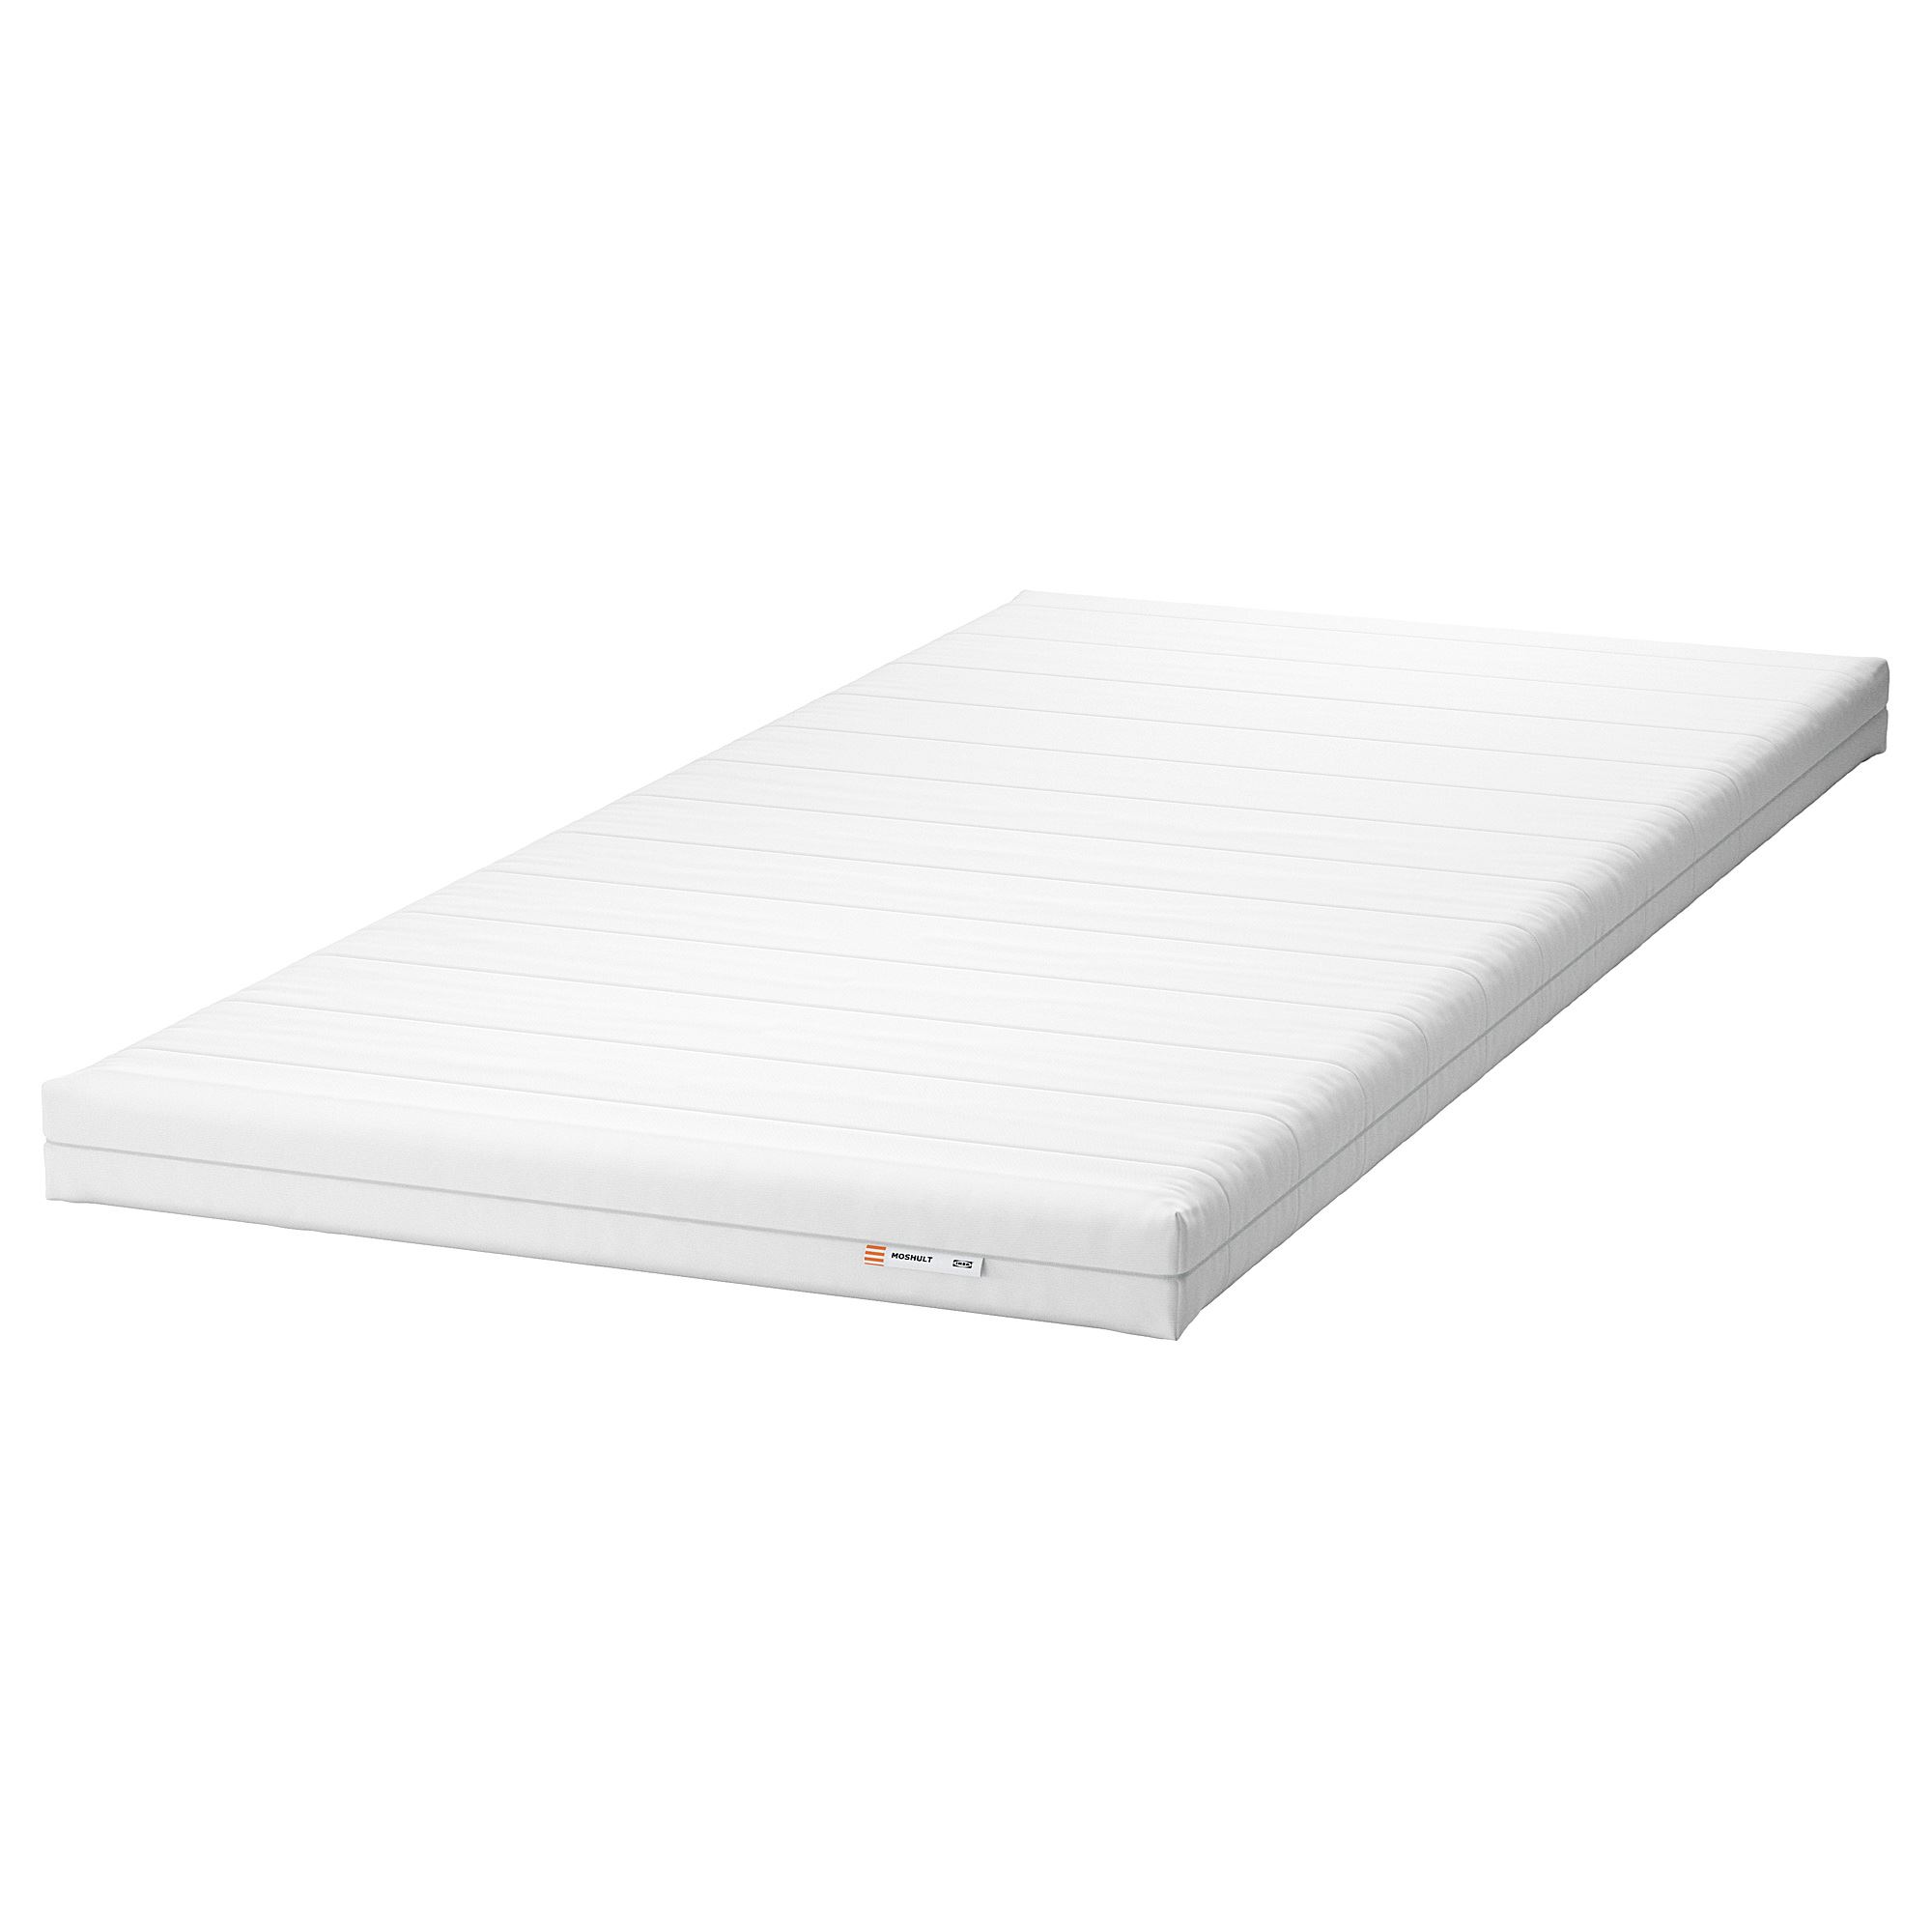 MOSHULT tek kişilik yatak, beyazsert, 80x200 cm